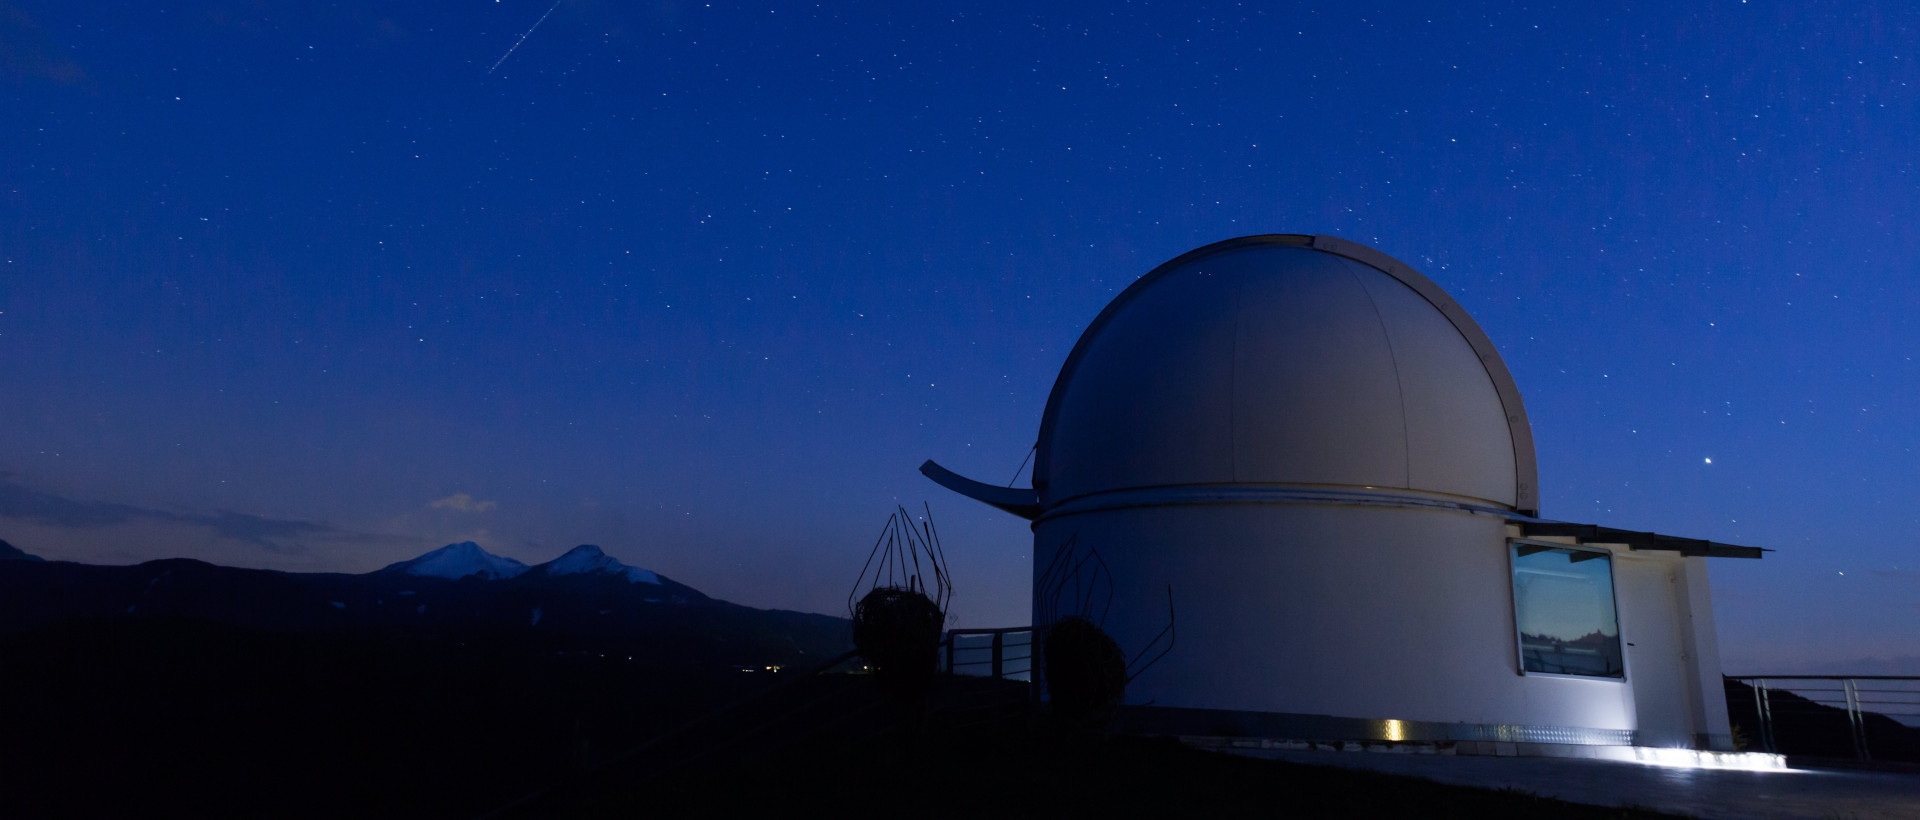 Teleskop mot nattehimmelen